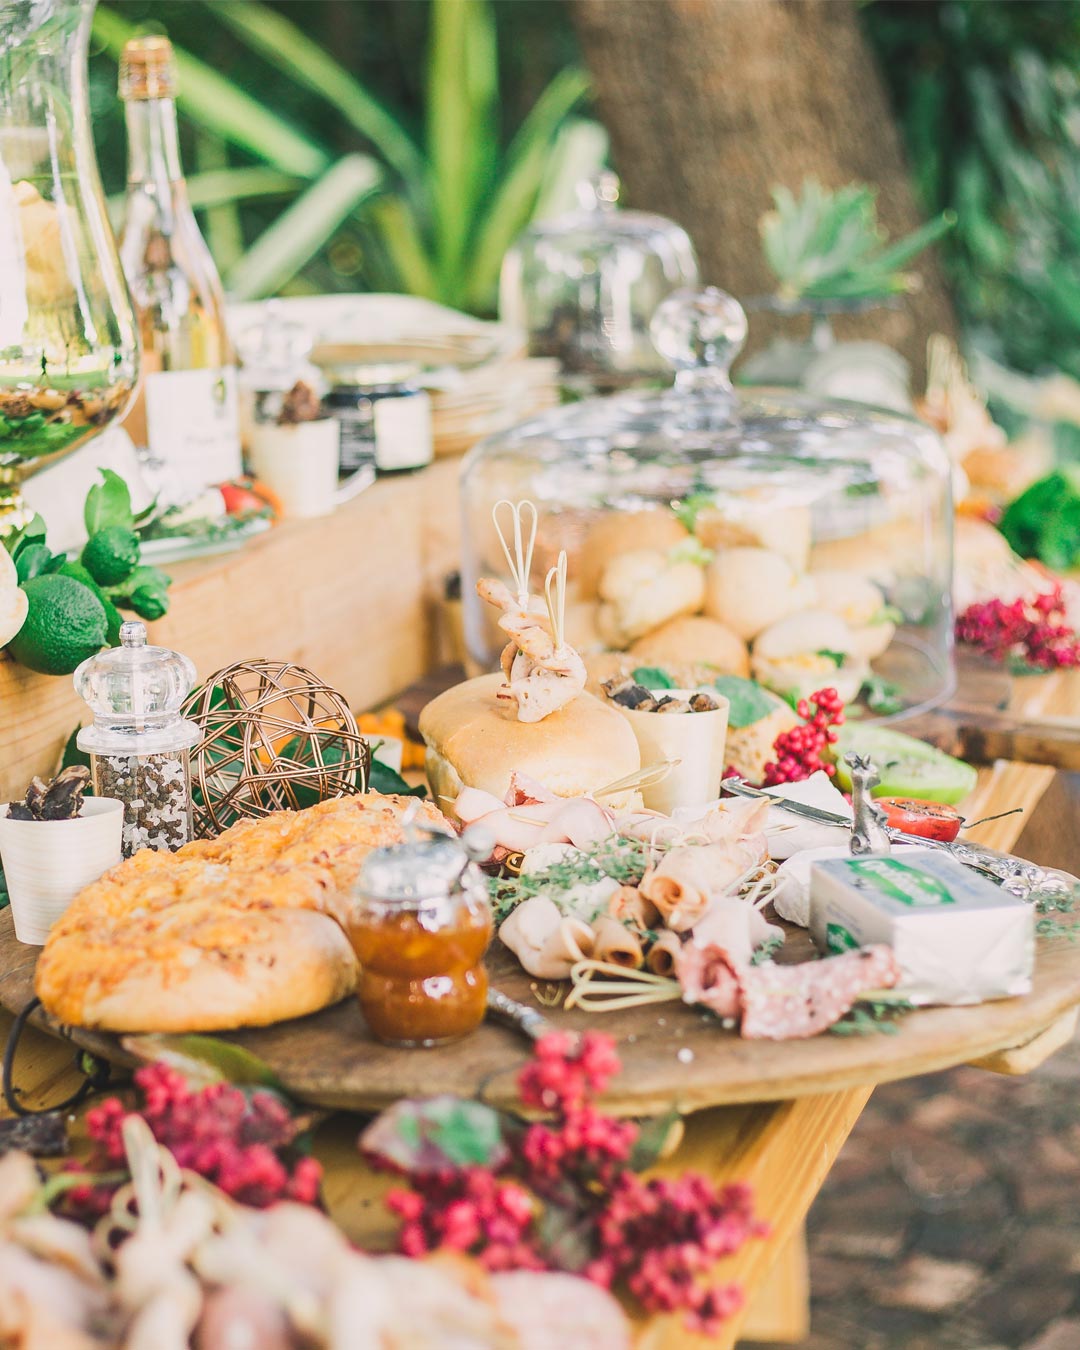 wedding summer food ideas buffet table